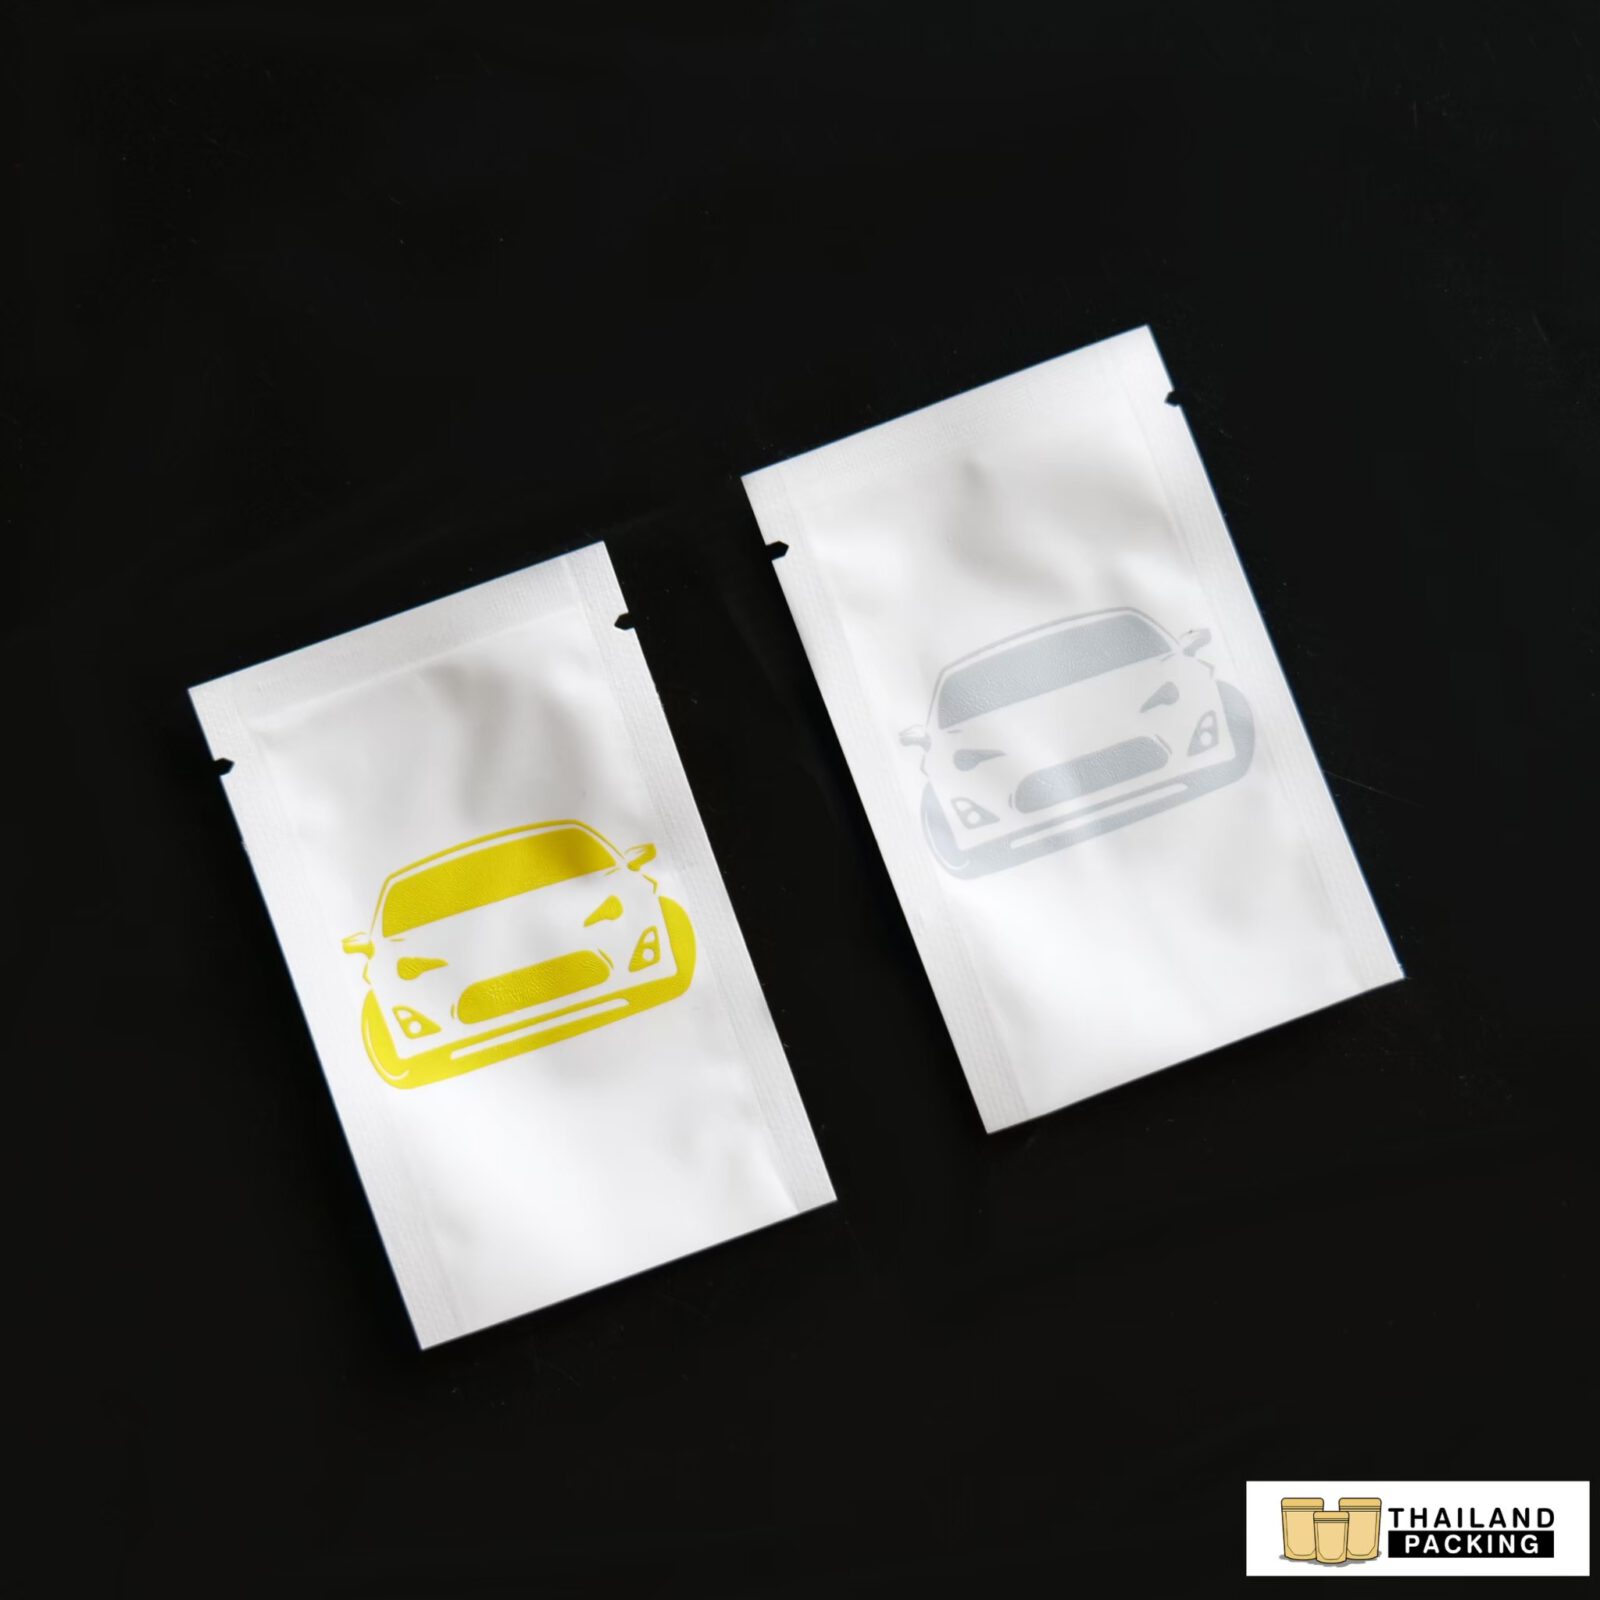 สกรีนถุง-สกรีน-ซองซีล-ซองซีล3ด้าน-ออกแบบโลโก้-Logo